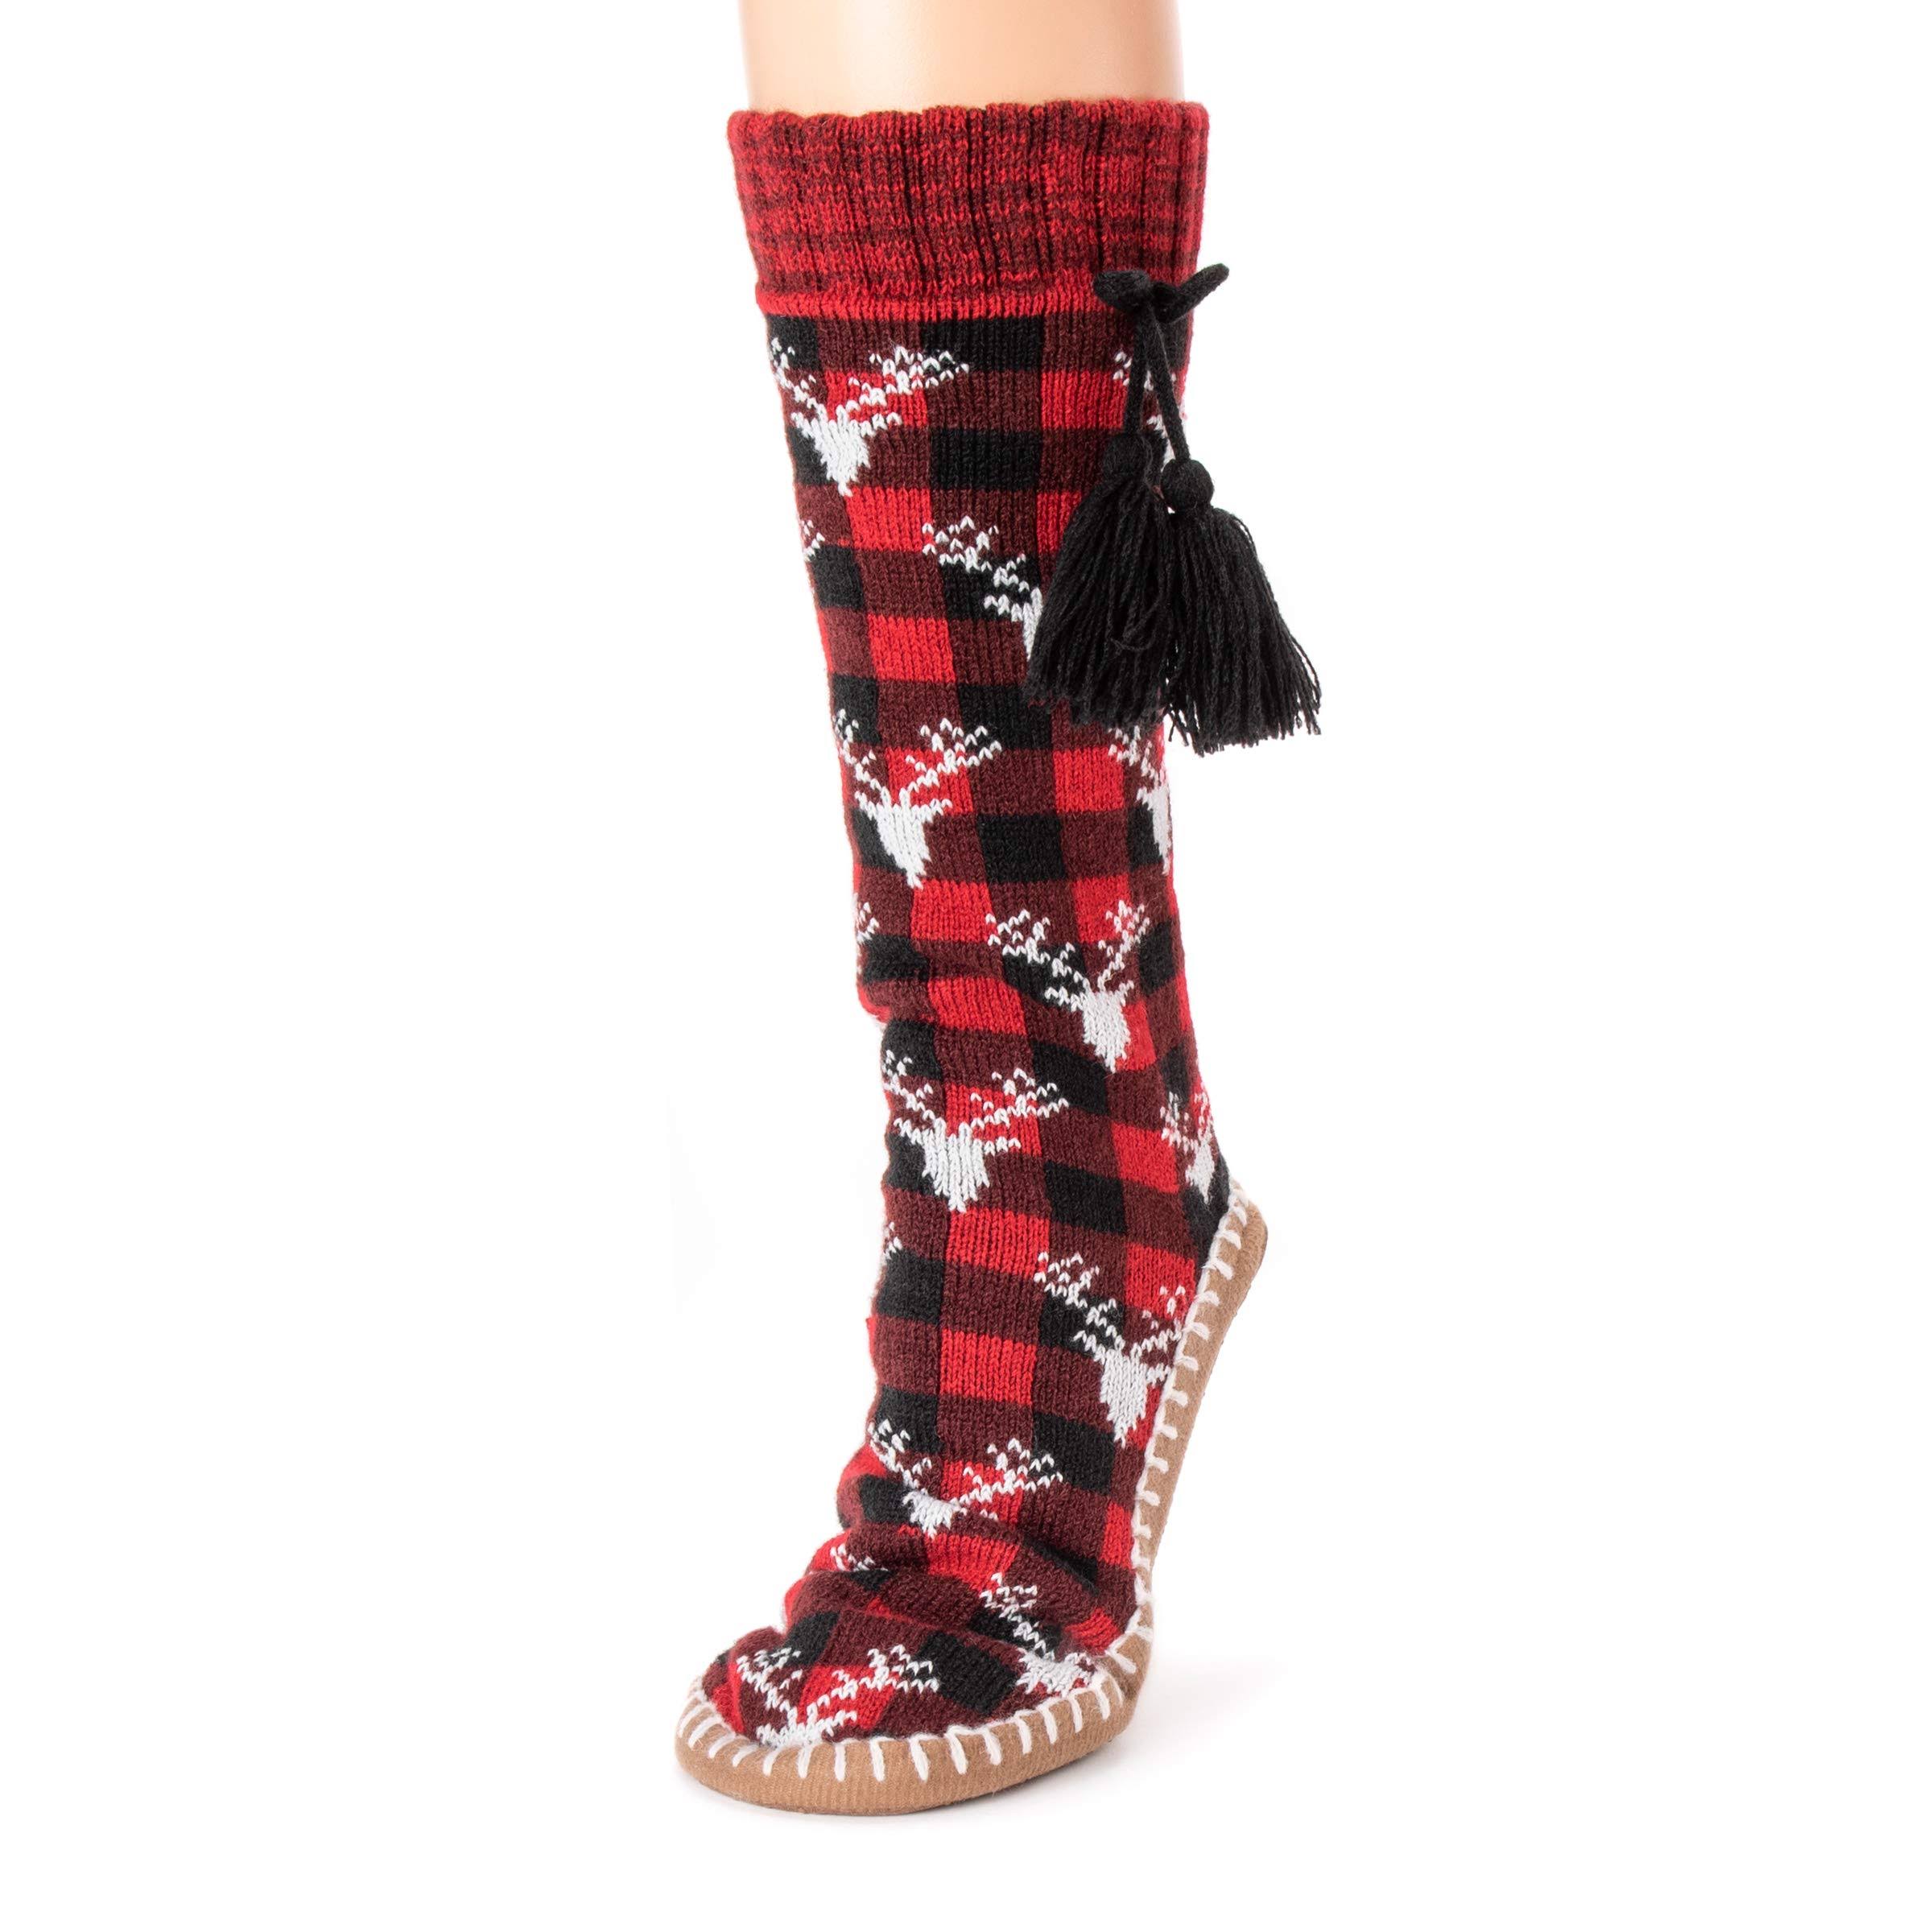 Muk Luks Women's Tasseled Sock Slipper - Red, Small/Medium